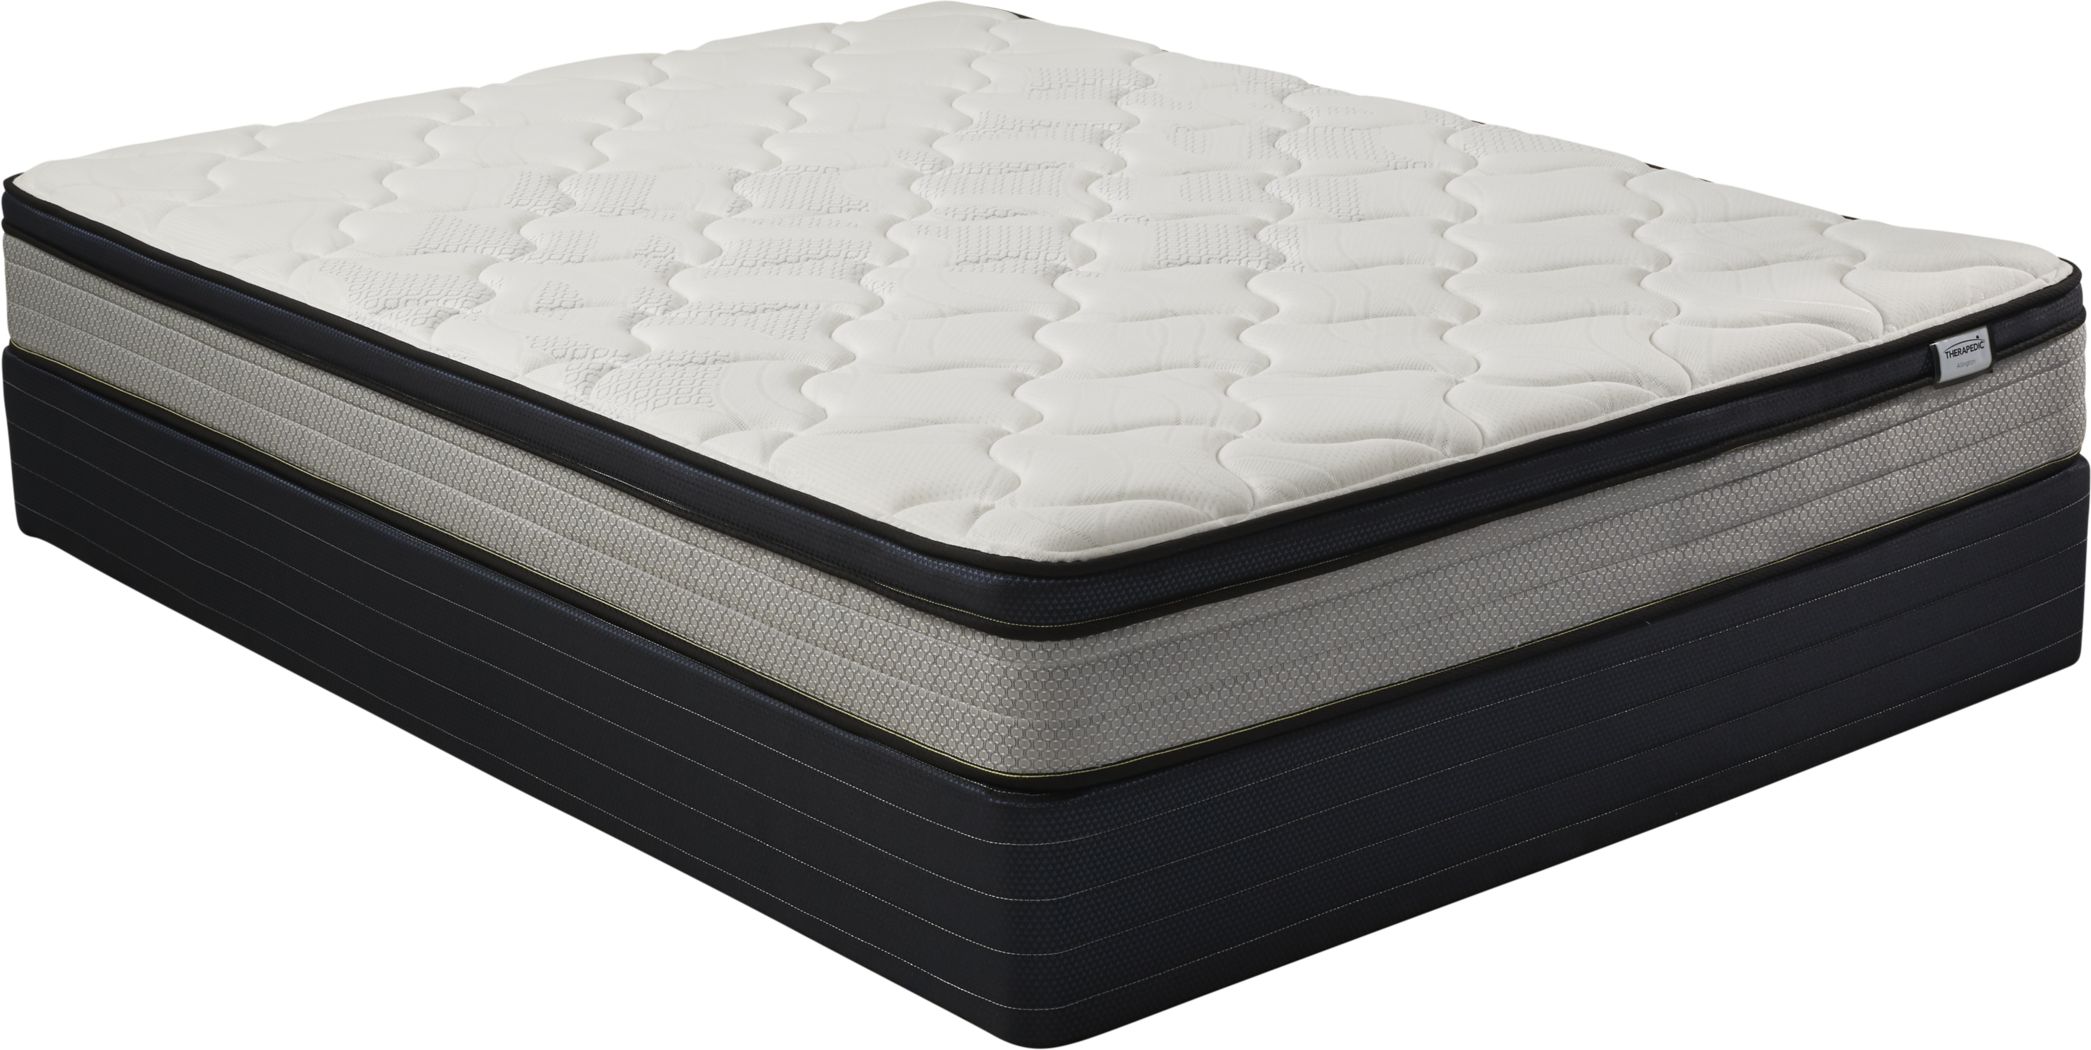 cheap mattresses near me queen